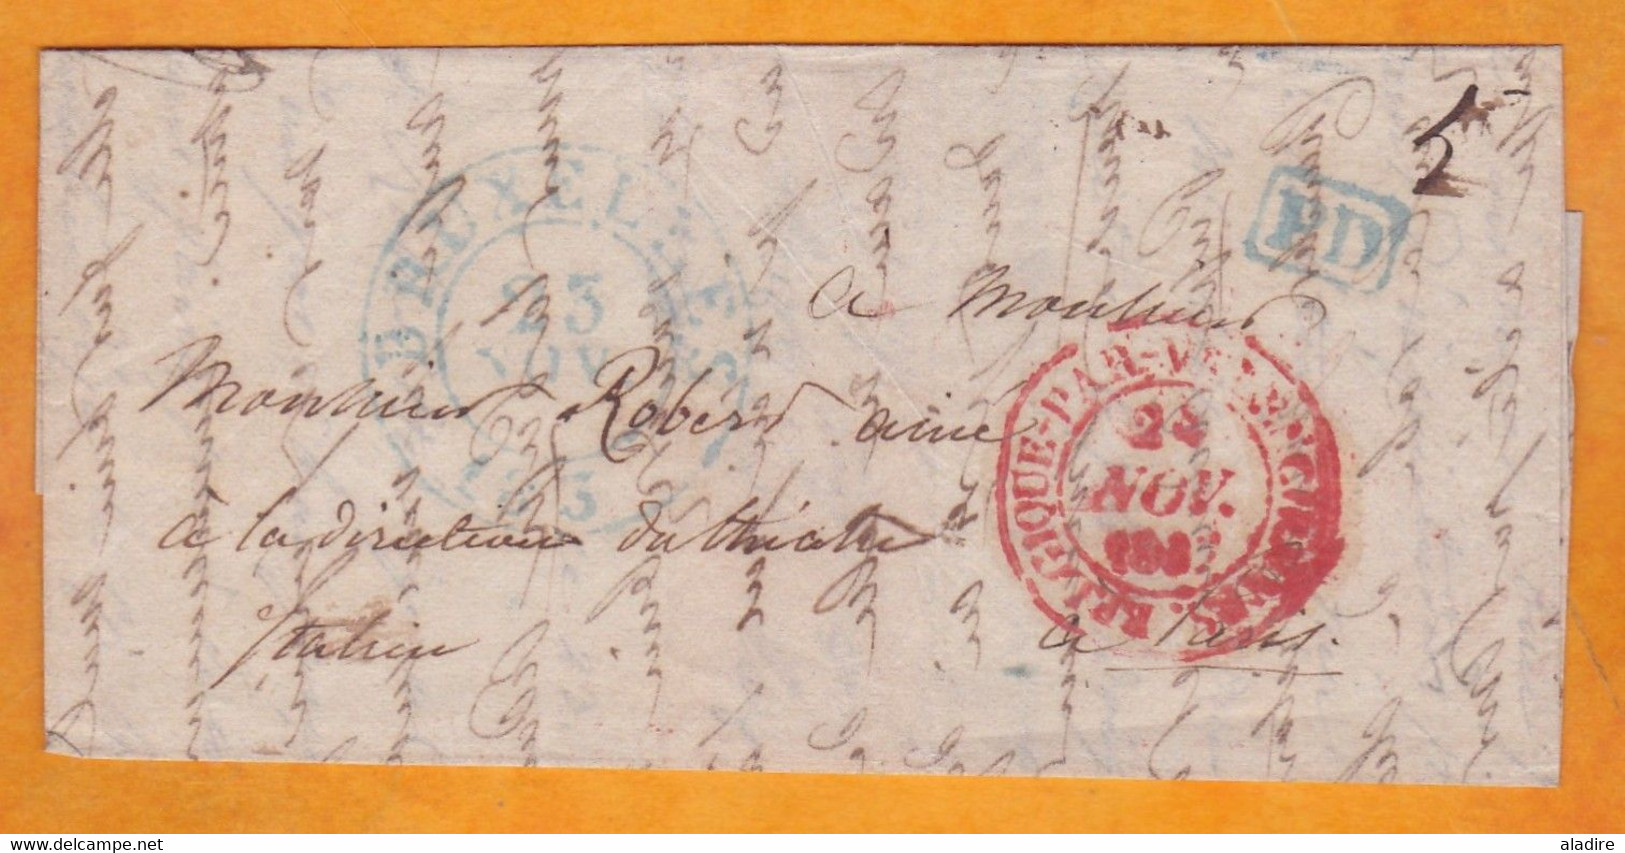 1837 - Lettre Pliée Personnelle En Français De BRUXELLES, Belgique Indépendante Vers PARIS, France - Entrée Valenciennes - 1830-1849 (Belgique Indépendante)